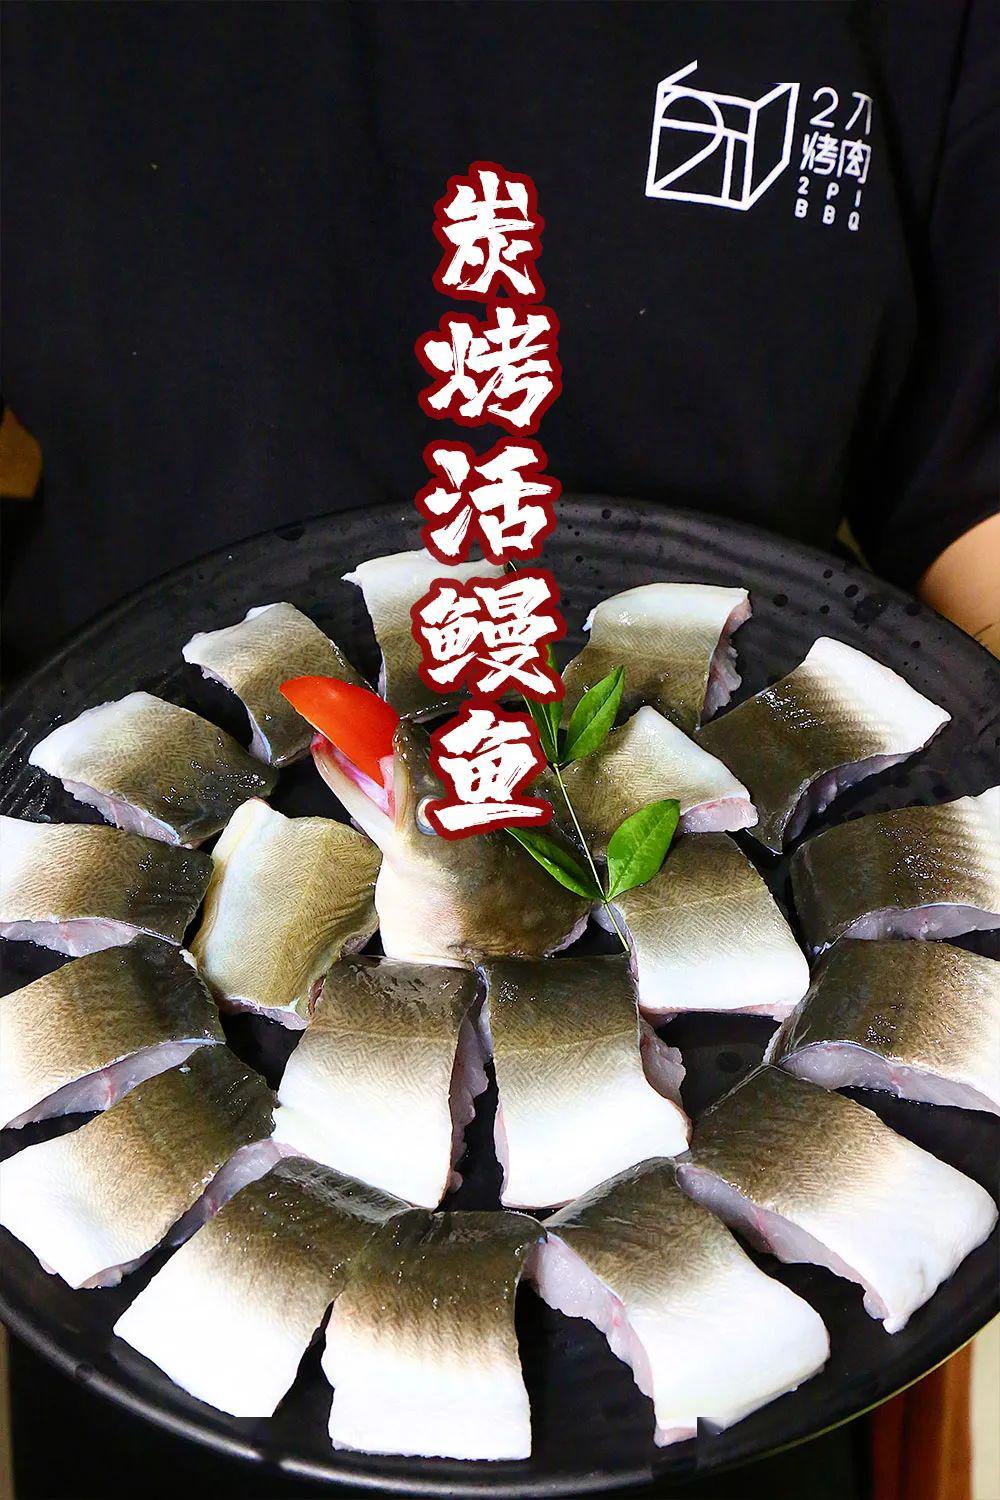 福州开在"工业厂房"里的日式烤肉,惊现xxxl版炭烤活鳗鱼!